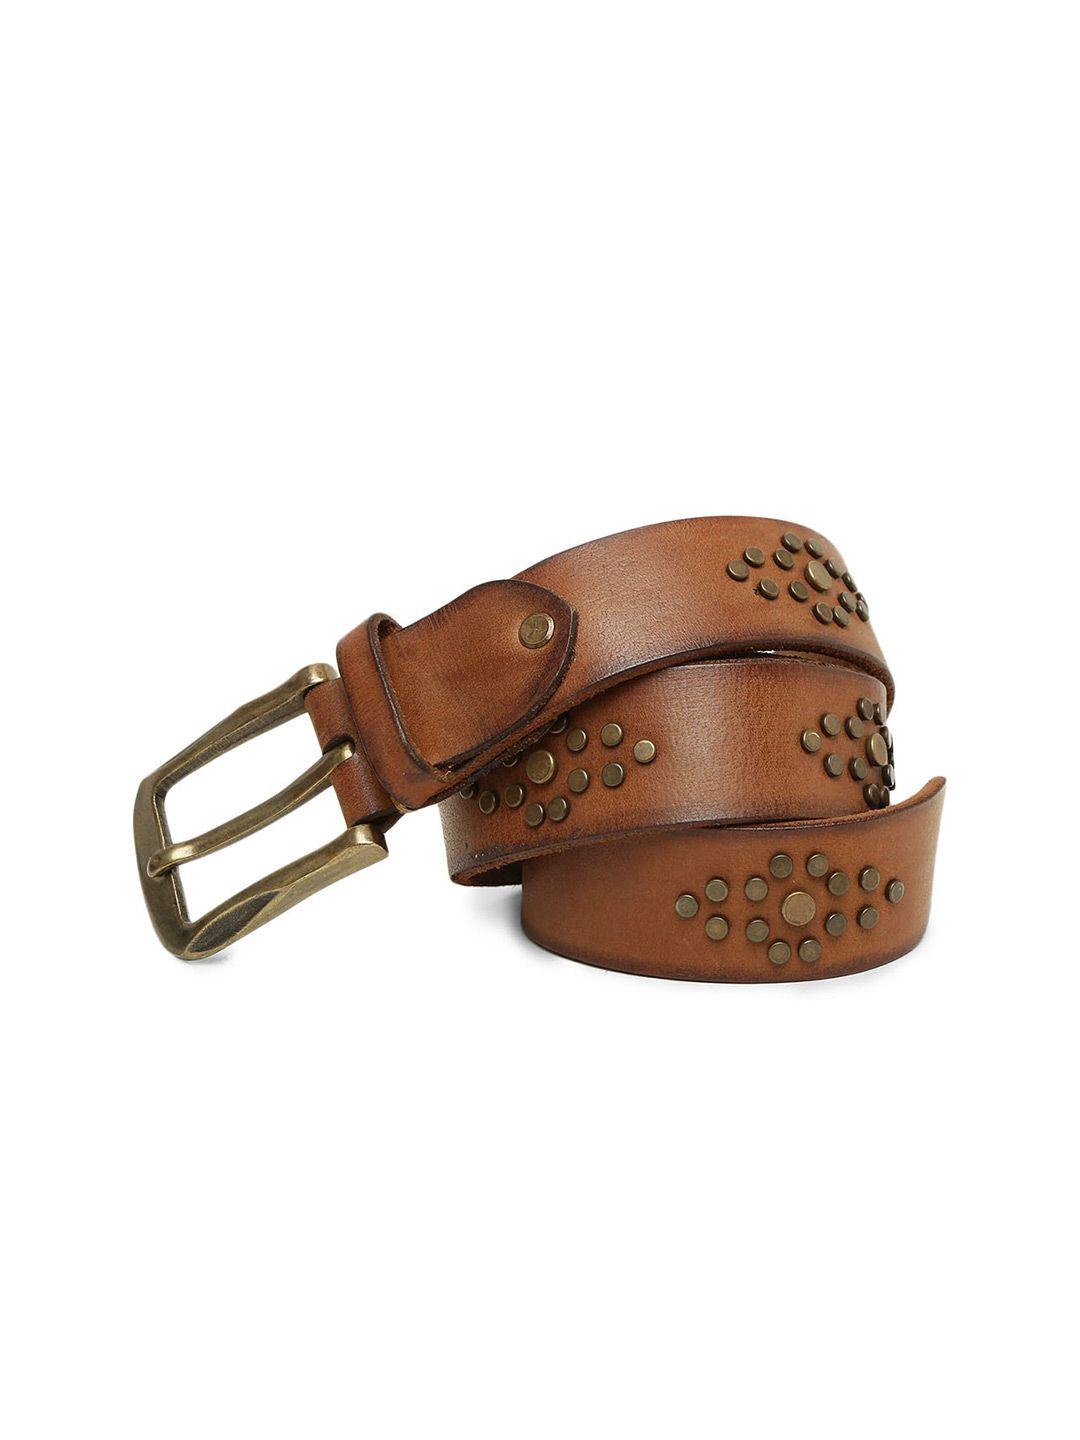 art n vintage men studded embellished leather casual belt